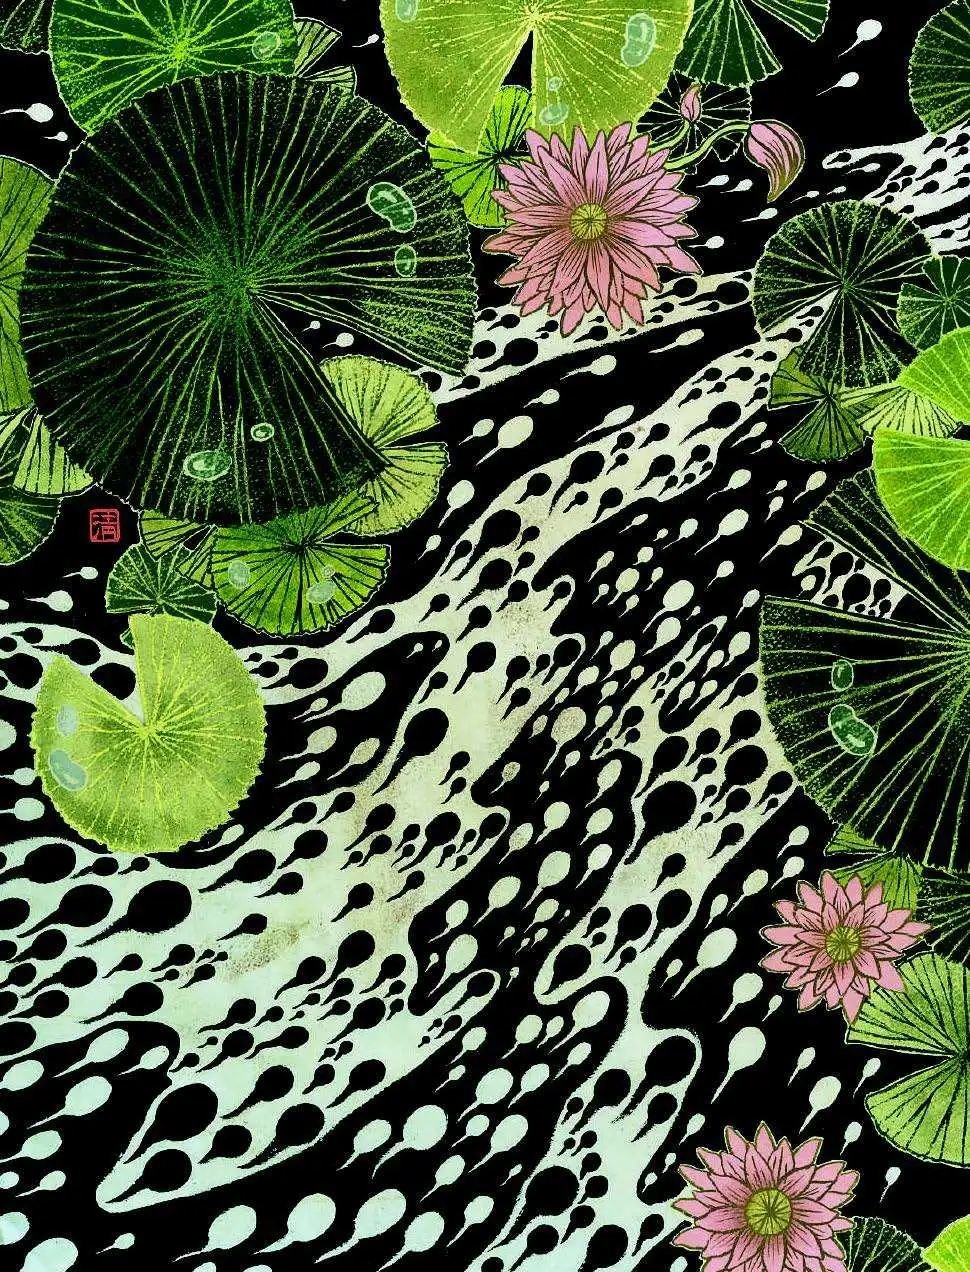 清水裕子，《蛙页》（Frogfolio），2007年